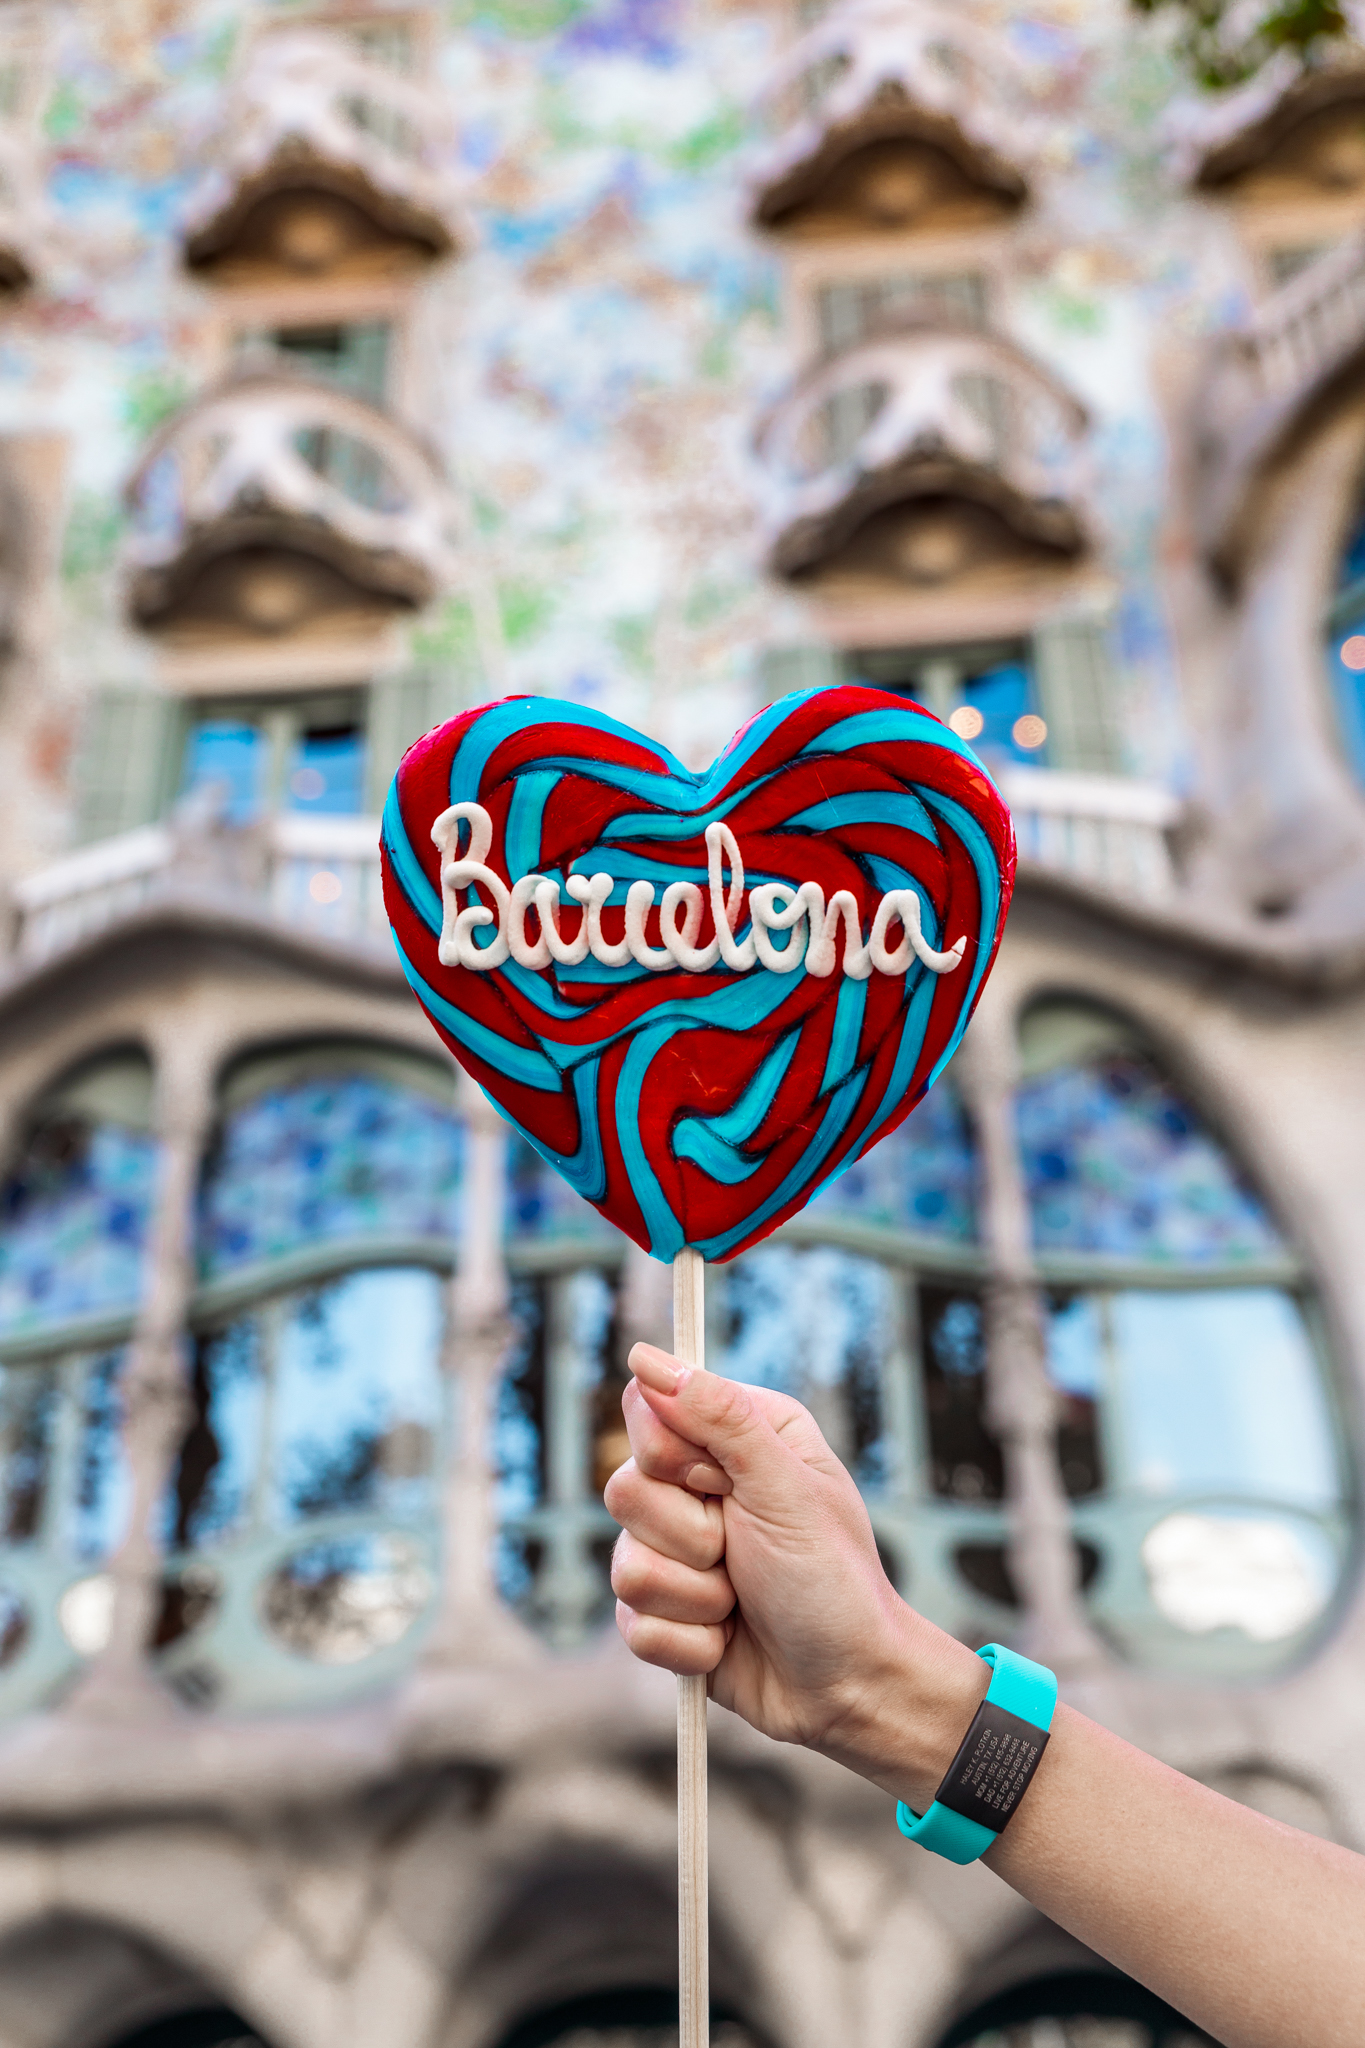 The 25 Most Instagrammable Spots in Barcelona (With Addresses!) // www.readysetjetset.net #readysetjetset #barcelona #spain